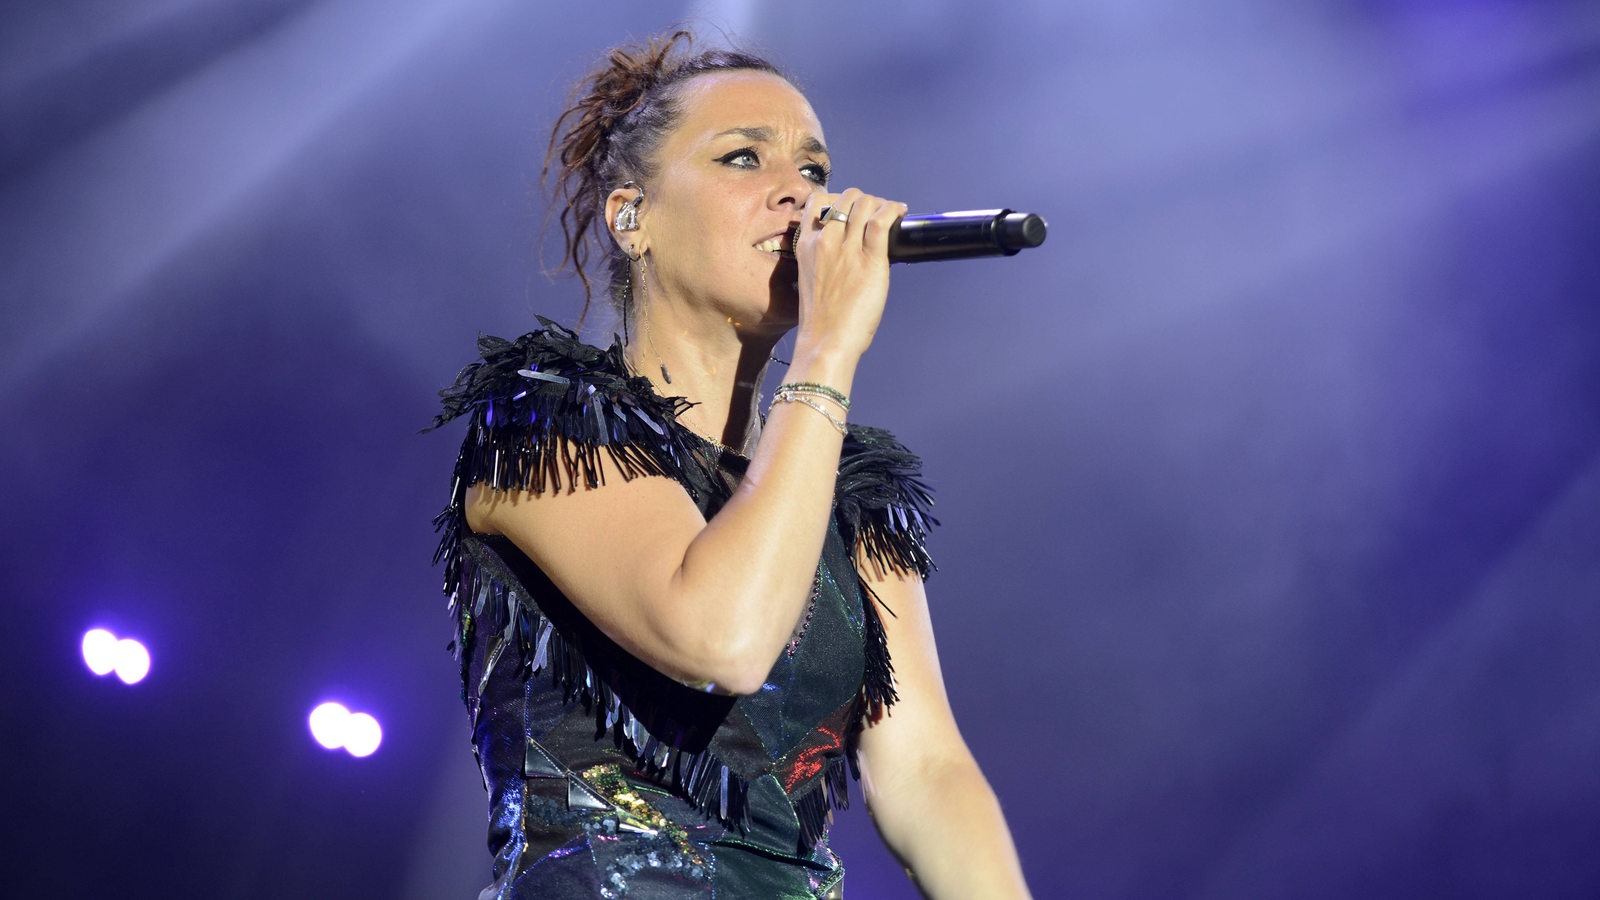 Die Sängerin Zaz live auf der Bühne 2019 in der Lüneburger Heide